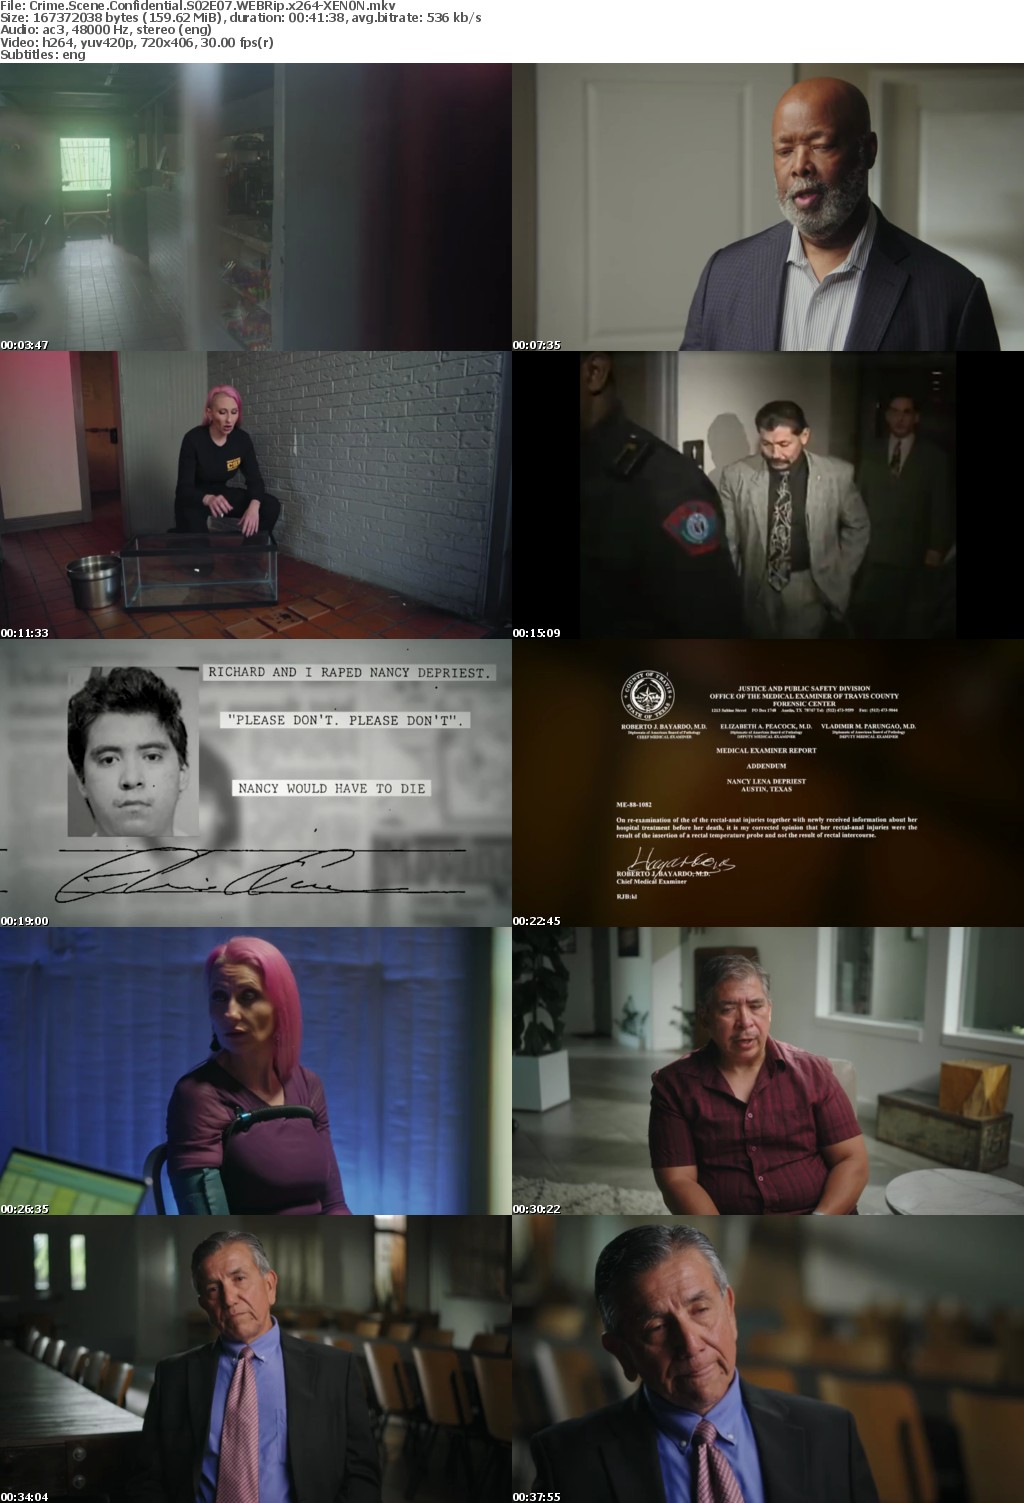 Crime Scene Confidential S02E07 WEBRip x264-XEN0N Saturn5